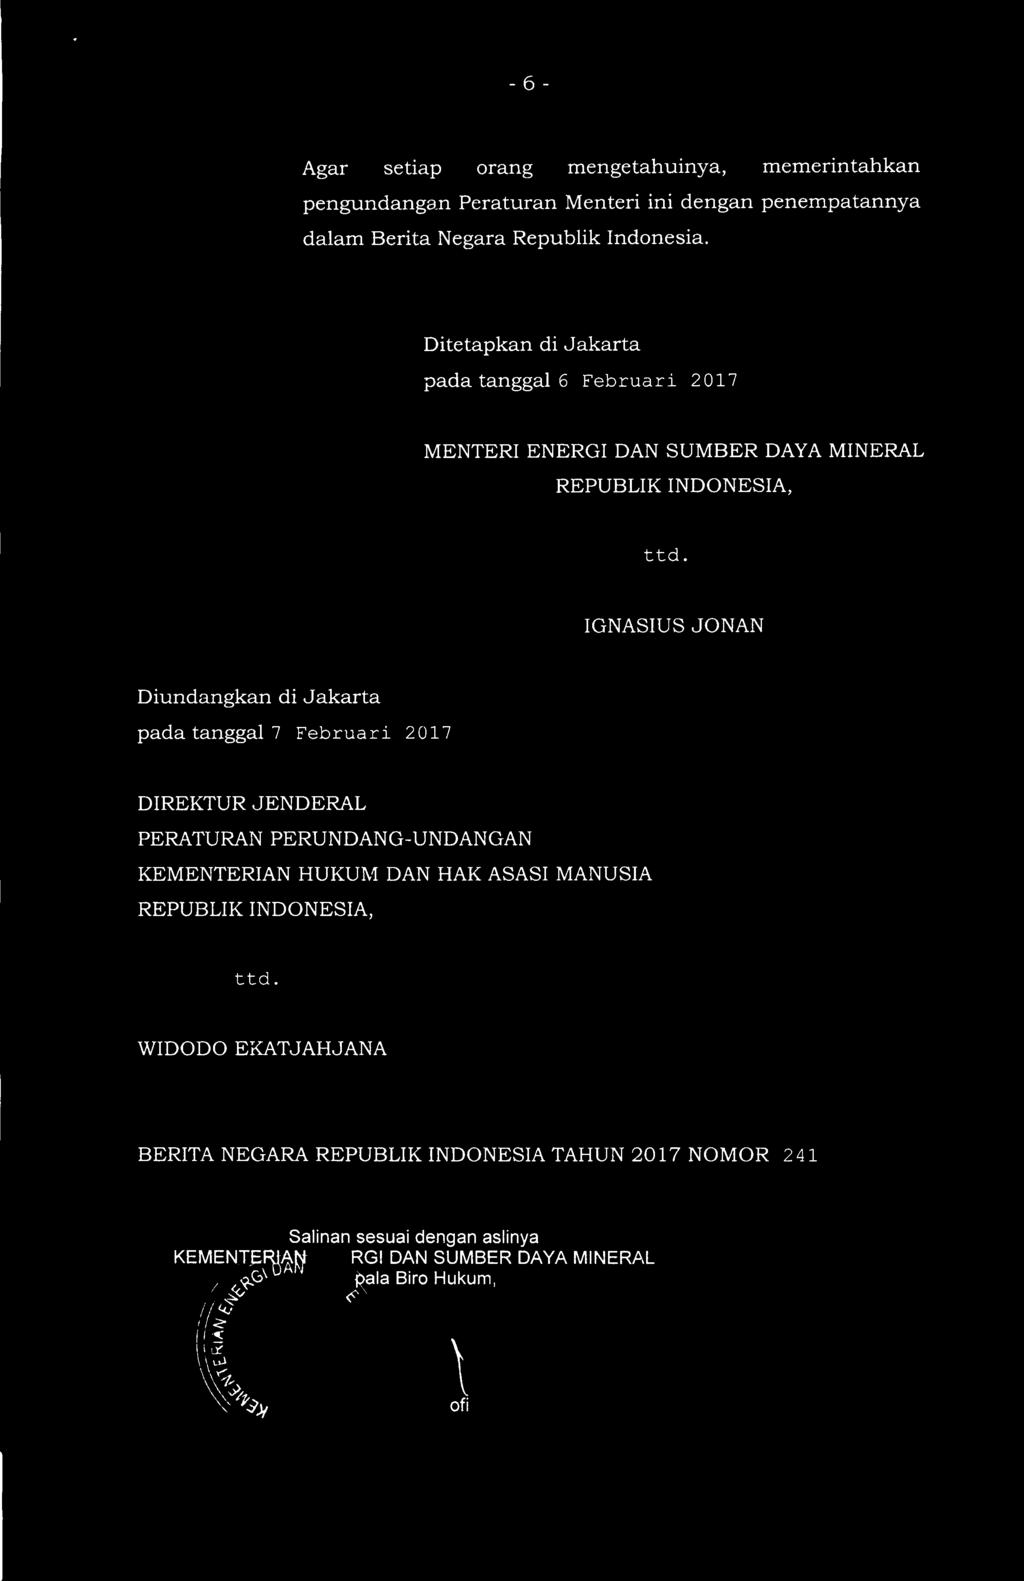 IGNASIUS JONAN Diundangkan di Jakarta pada tanggal 7 Februari 2017 DIREKTUR JENDERAL PERATURAN PERUNDANG-UNDANGAN KEMENTERIAN HUKUM DAN HAK ASASI MANUSIA